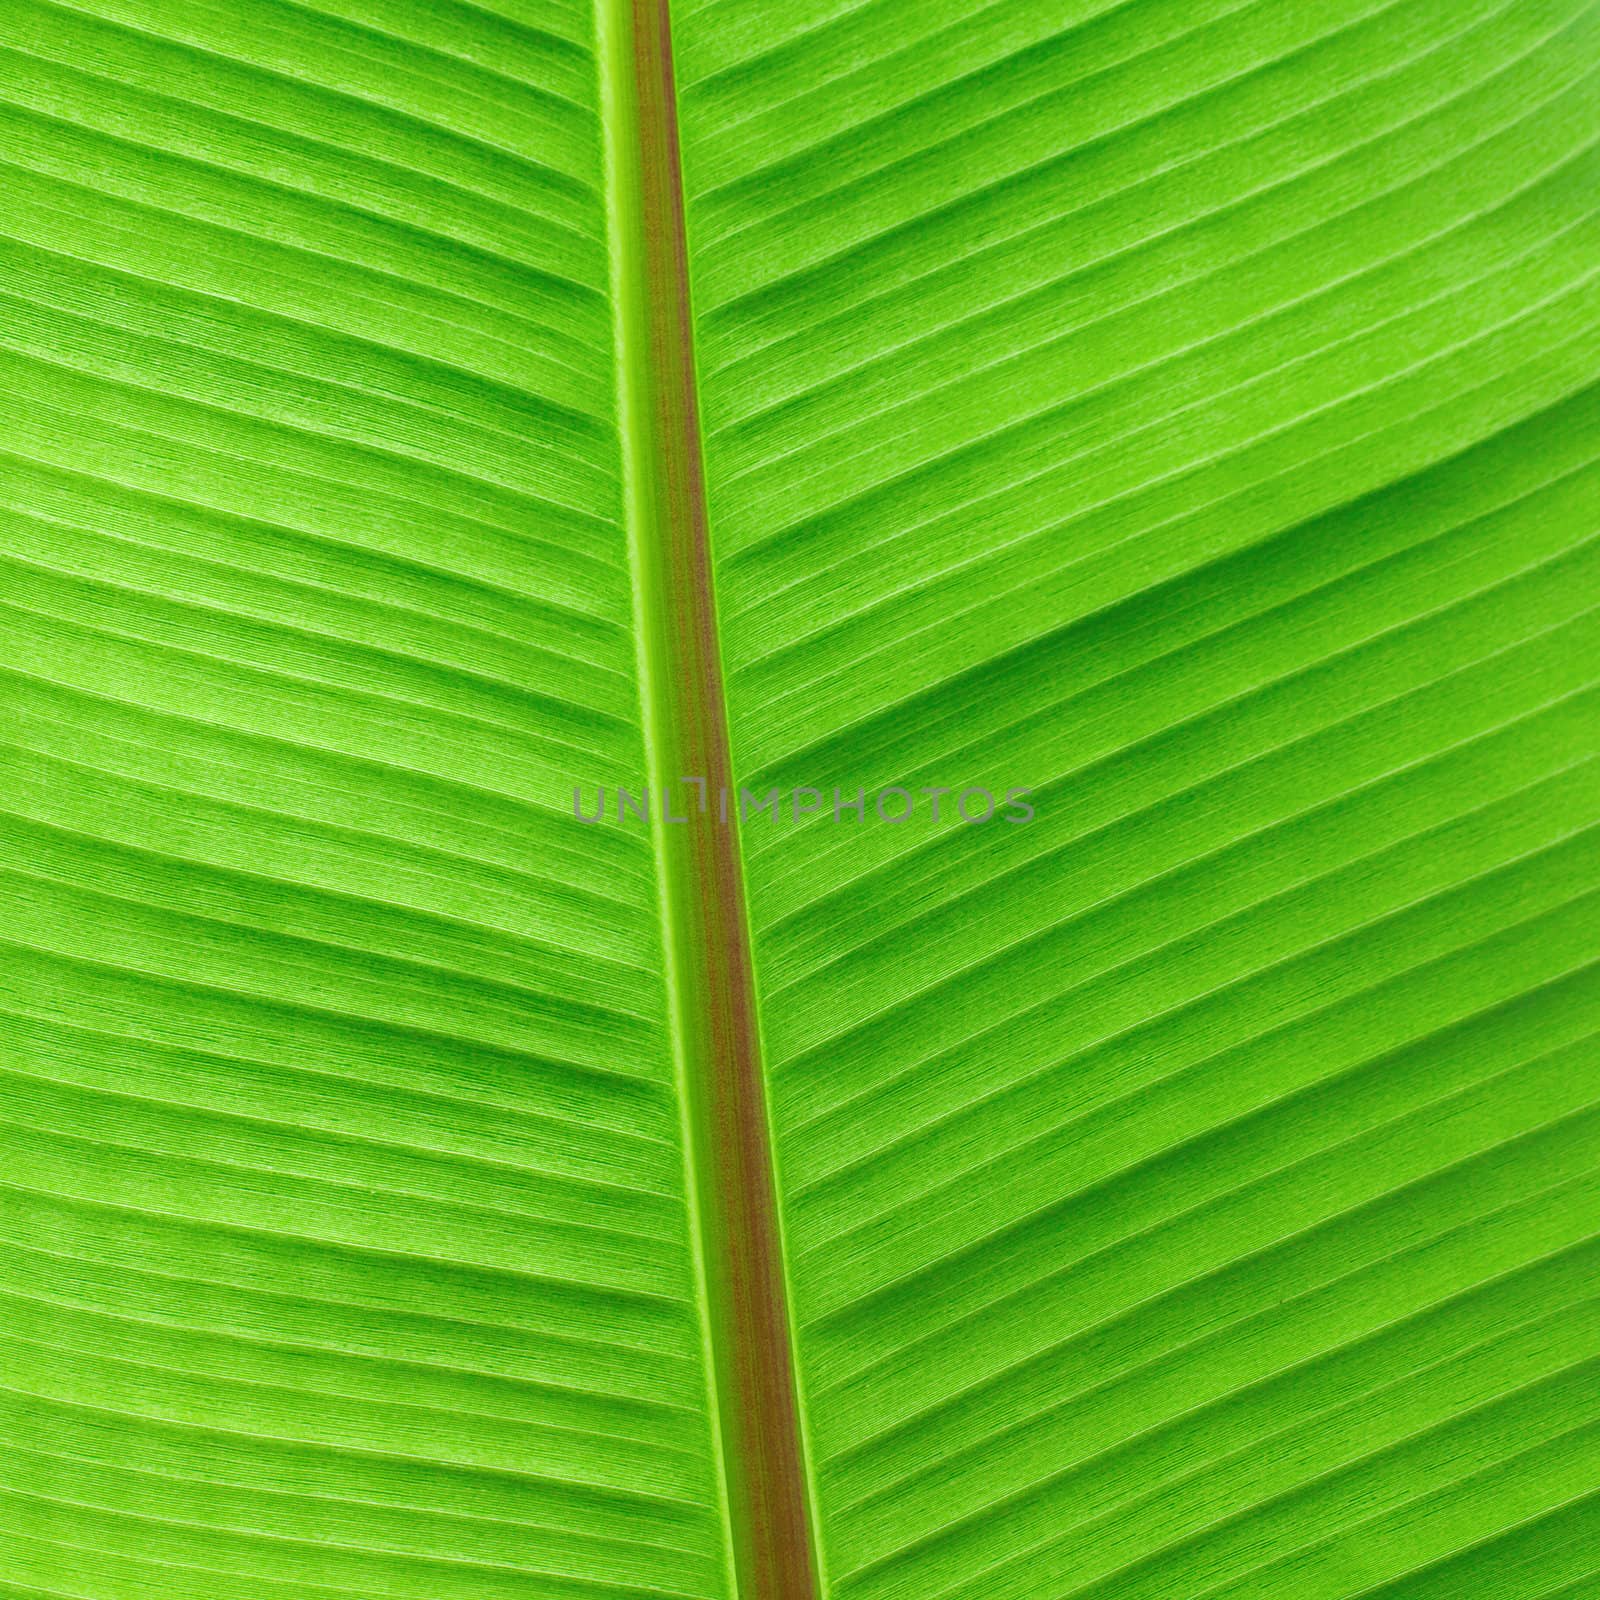 macro background of green leaf